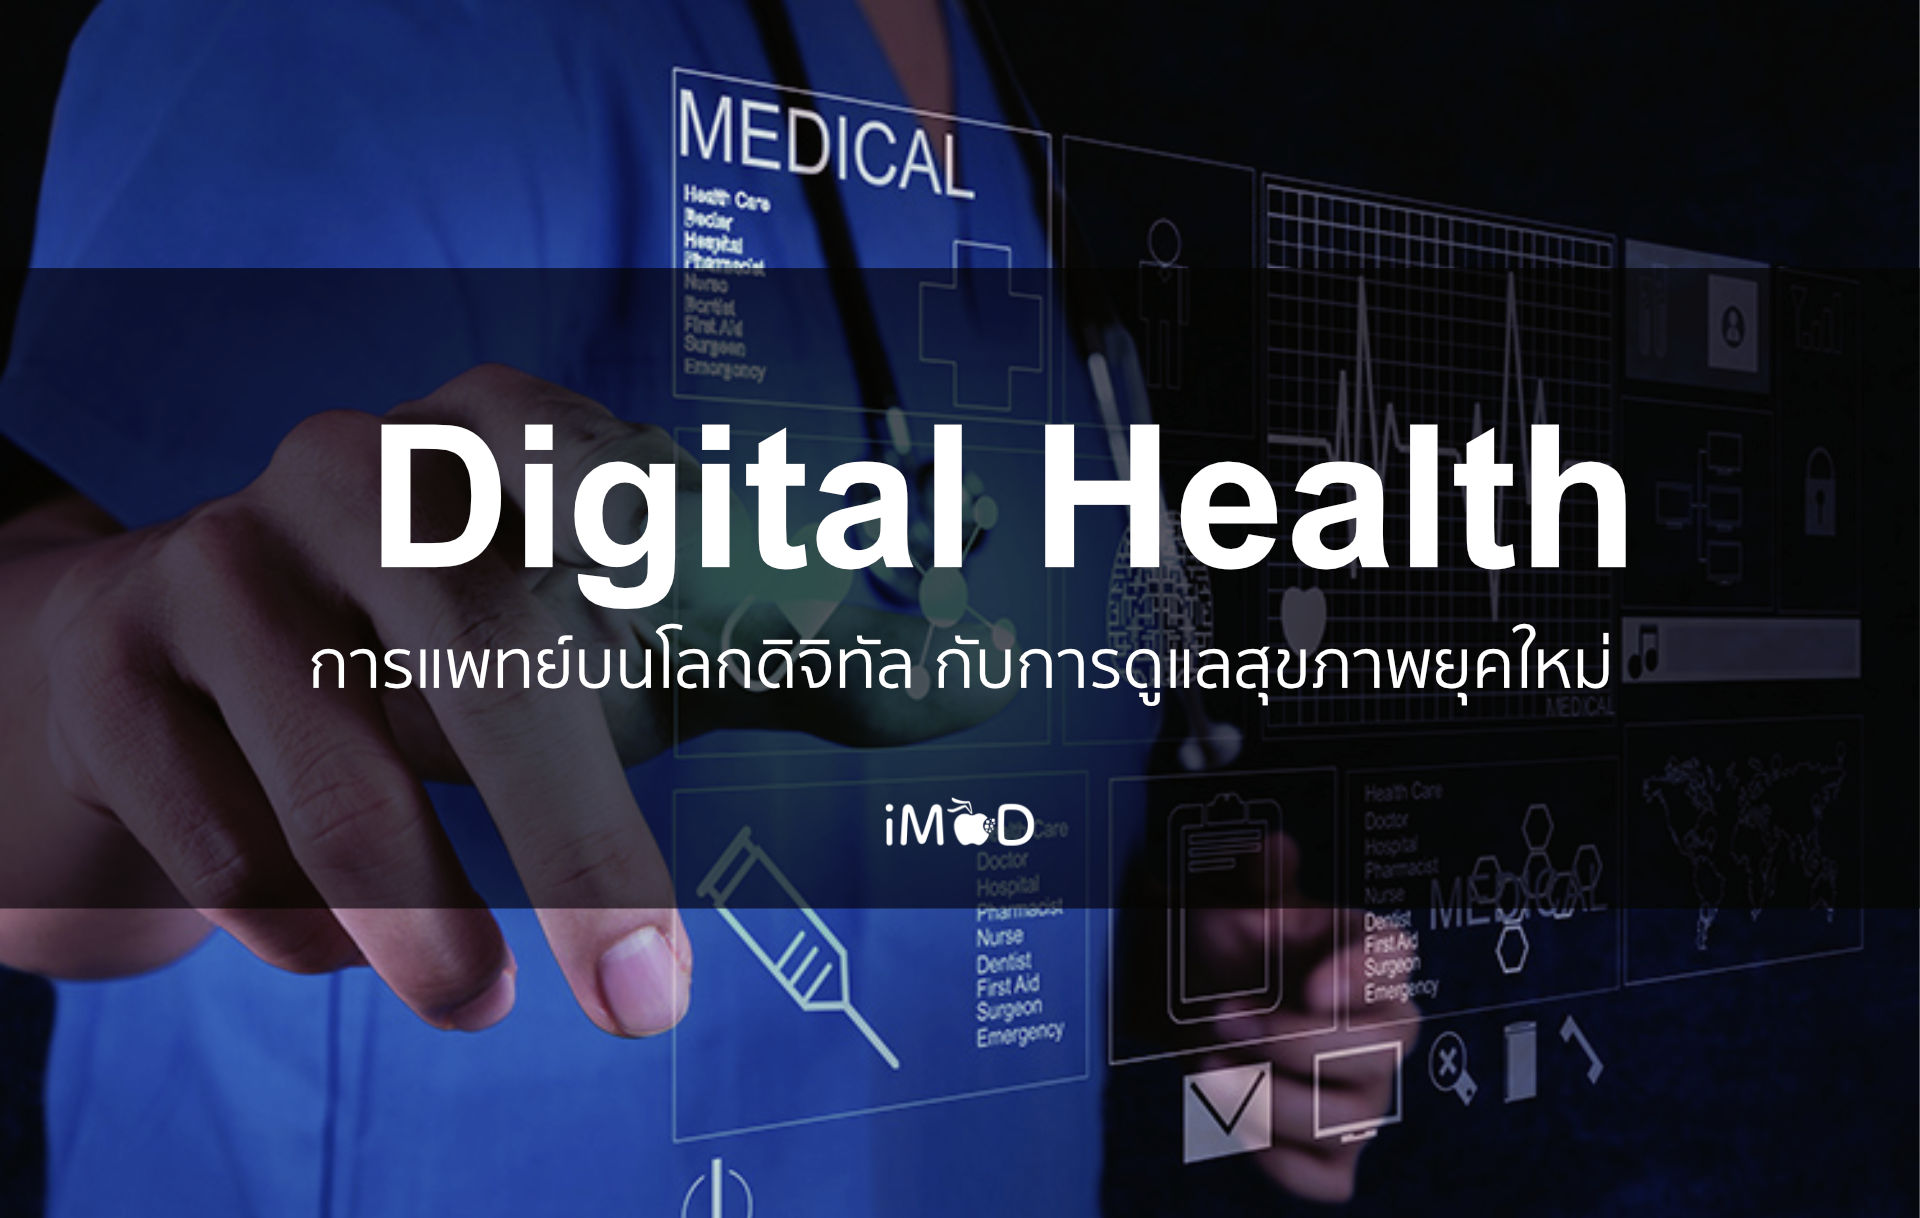 Digital Health การแพทย์บนโลกดิจิทัล กับการดูแลสุขภาพยุคใหม่